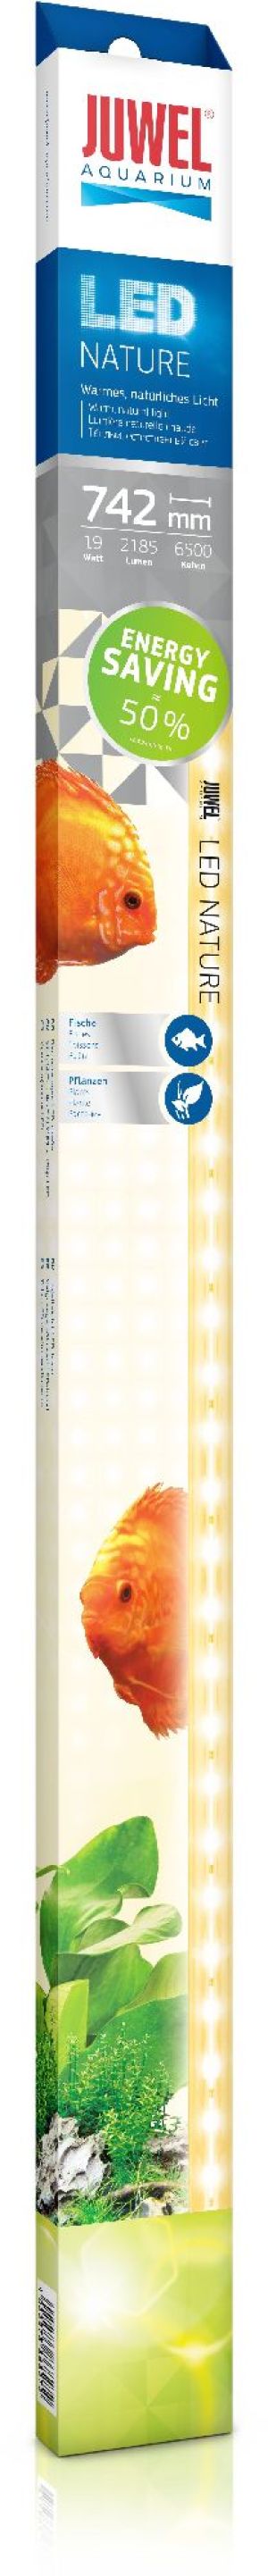 Juwel Świetlówka Nature LED 742mm, 19W 1